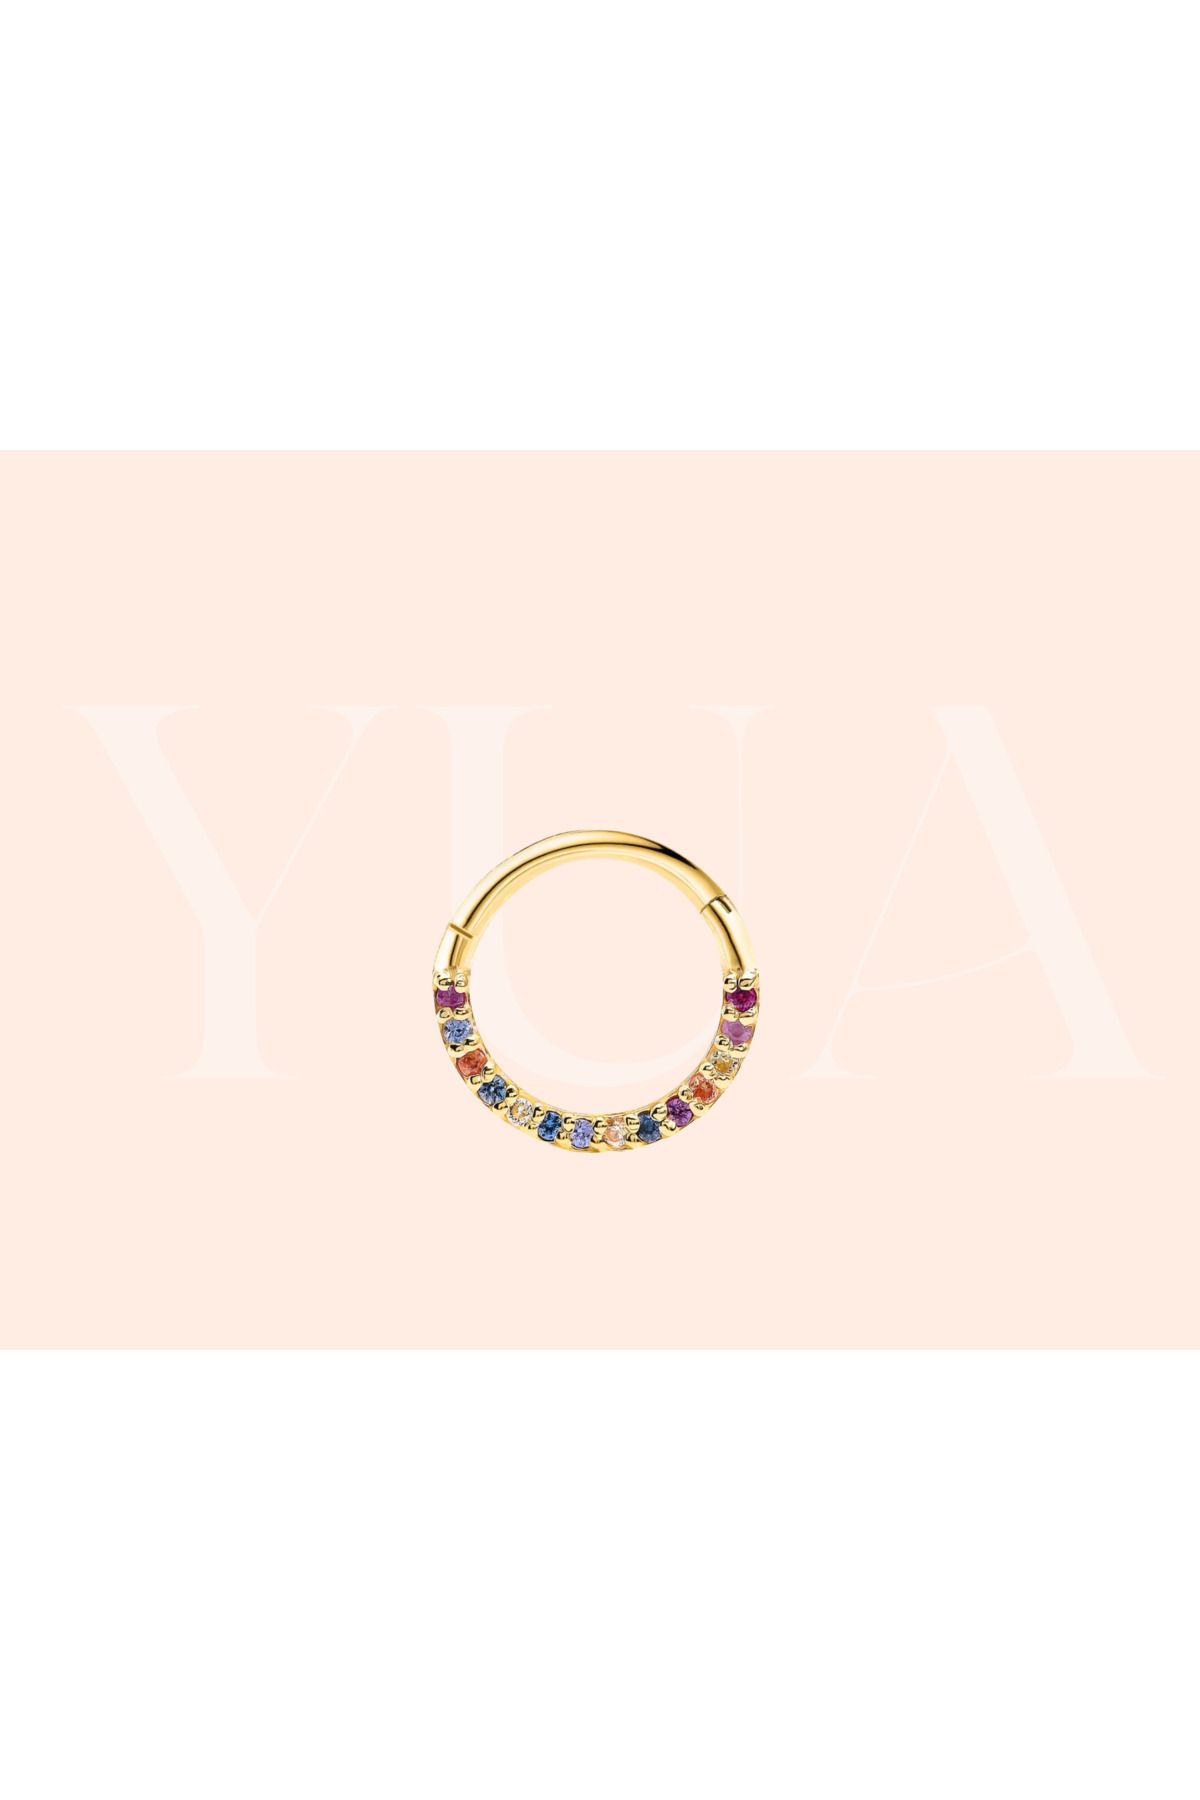 Yua Jewelry Renkli Safir Taşlı 14 Ayar Altın Kıkırdak/Helix Halka Piercing